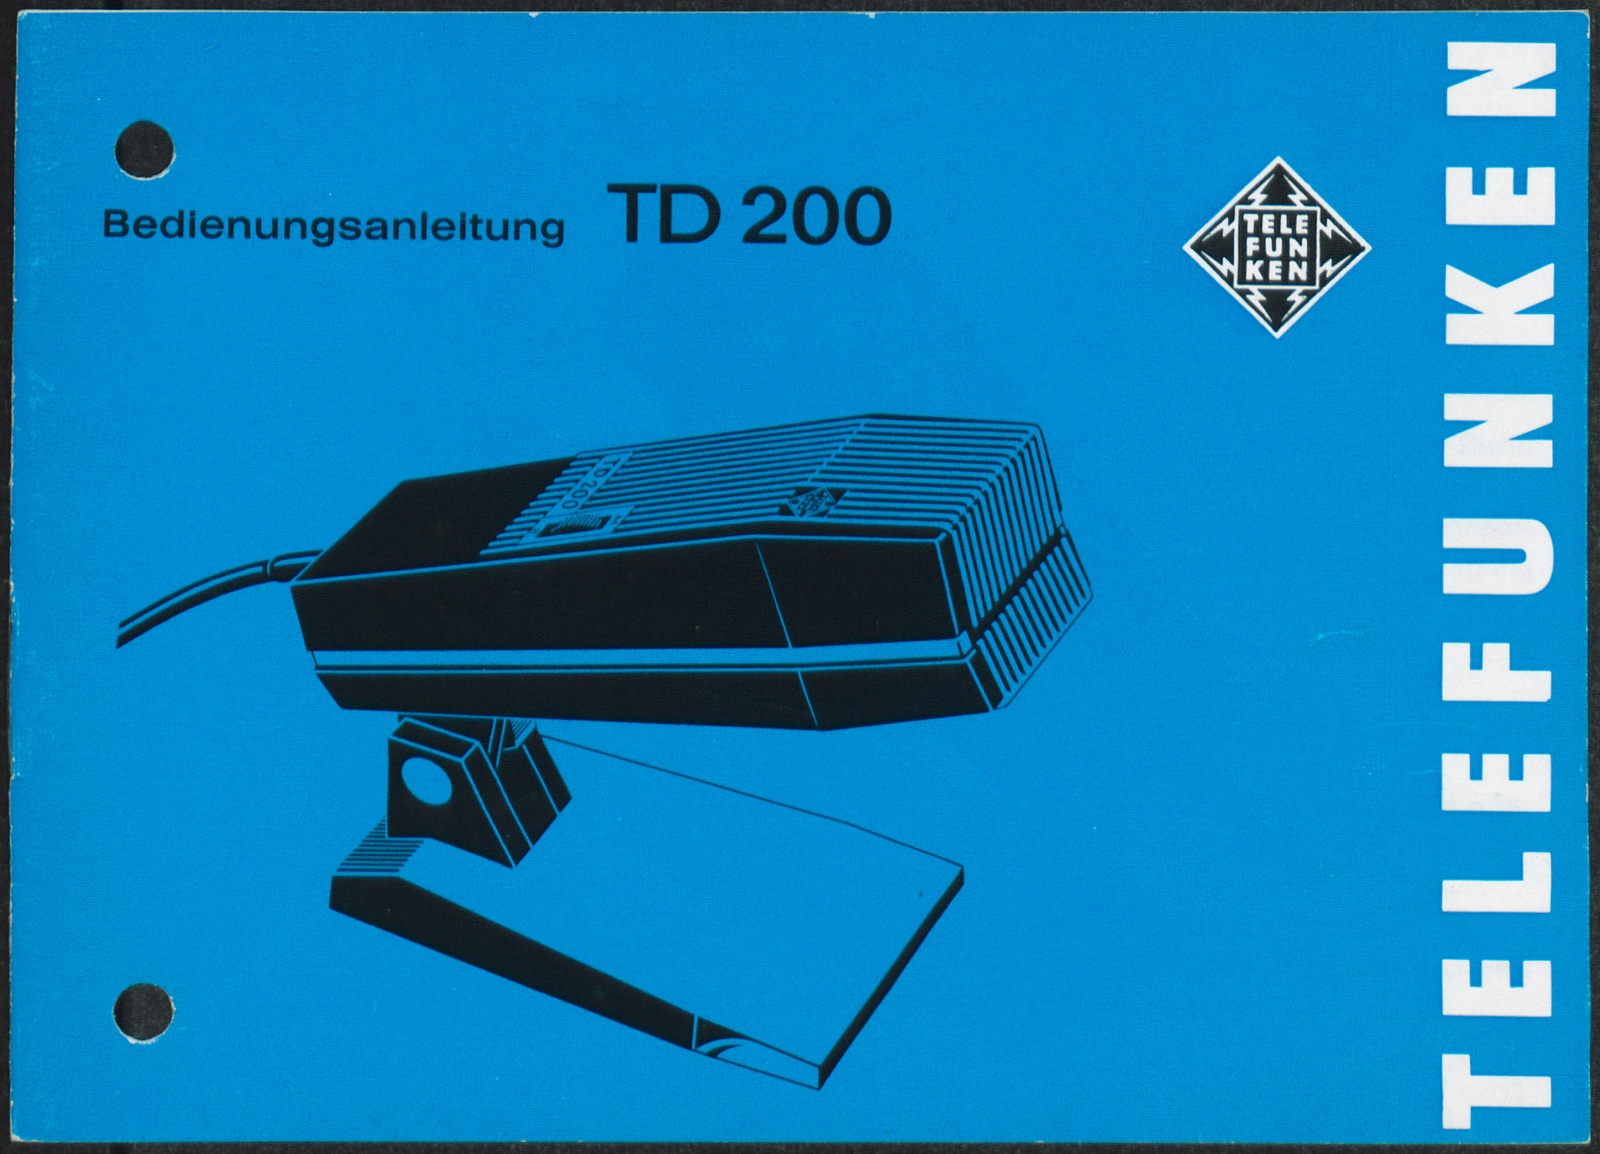 Bedienungsanleitung: Bedienungsanleitung TD 200 (Stiftung Deutsches Technikmuseum Berlin CC0)